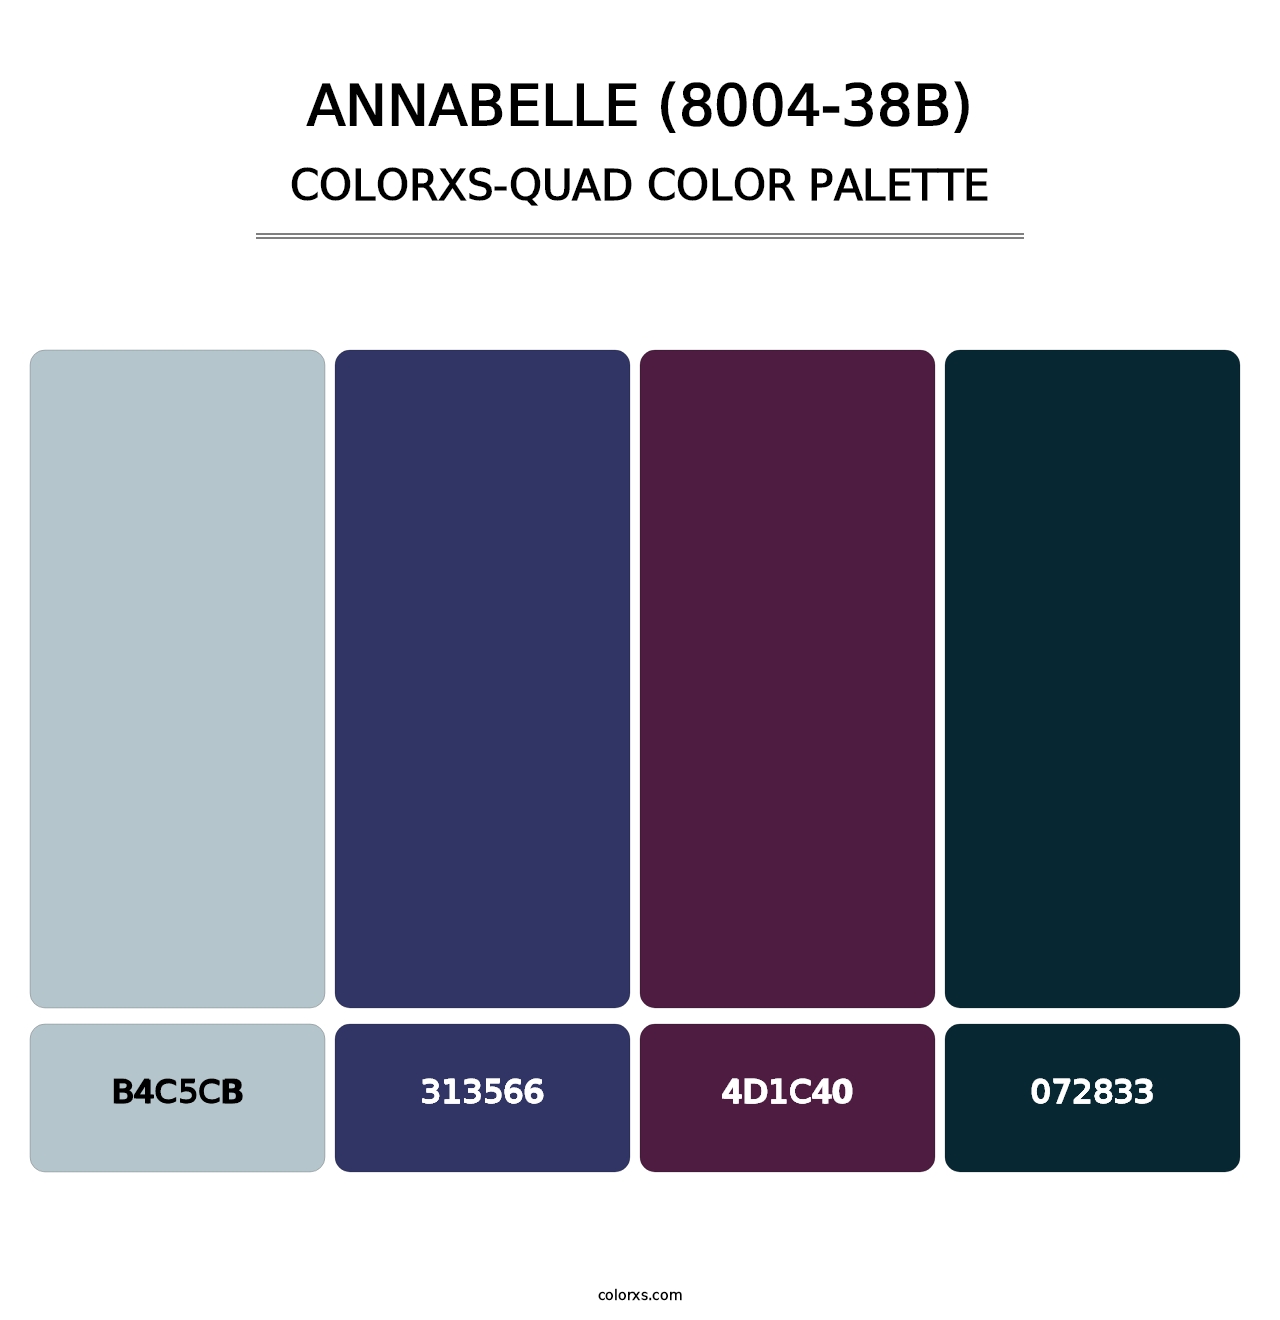 Annabelle (8004-38B) - Colorxs Quad Palette